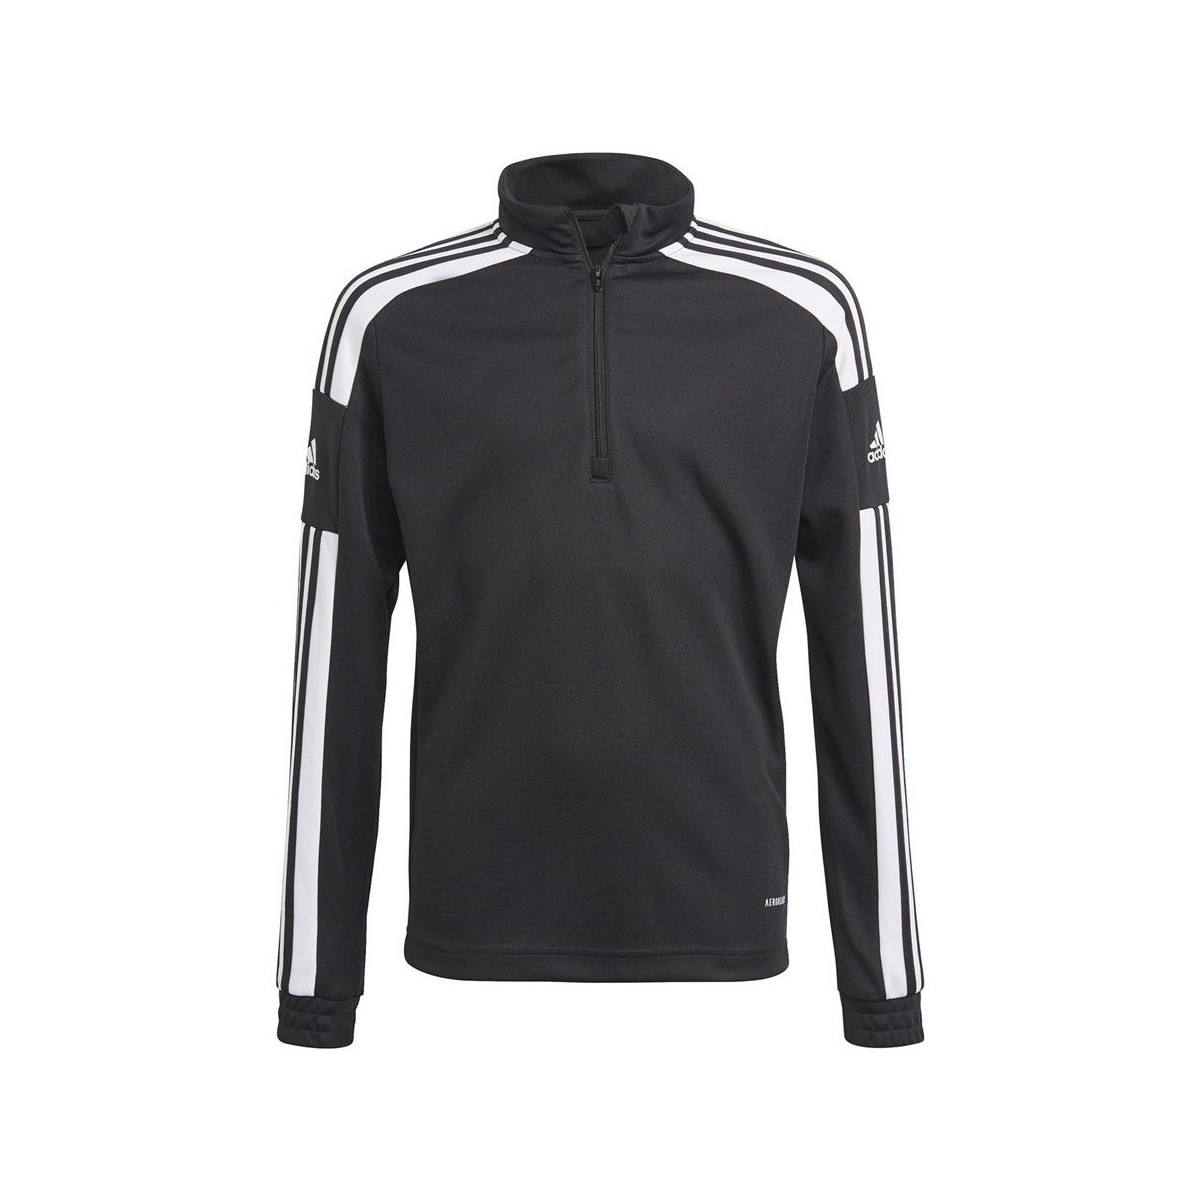 Vêtements Garçon Sweats adidas Originals Squadra 21 Noir, Blanc